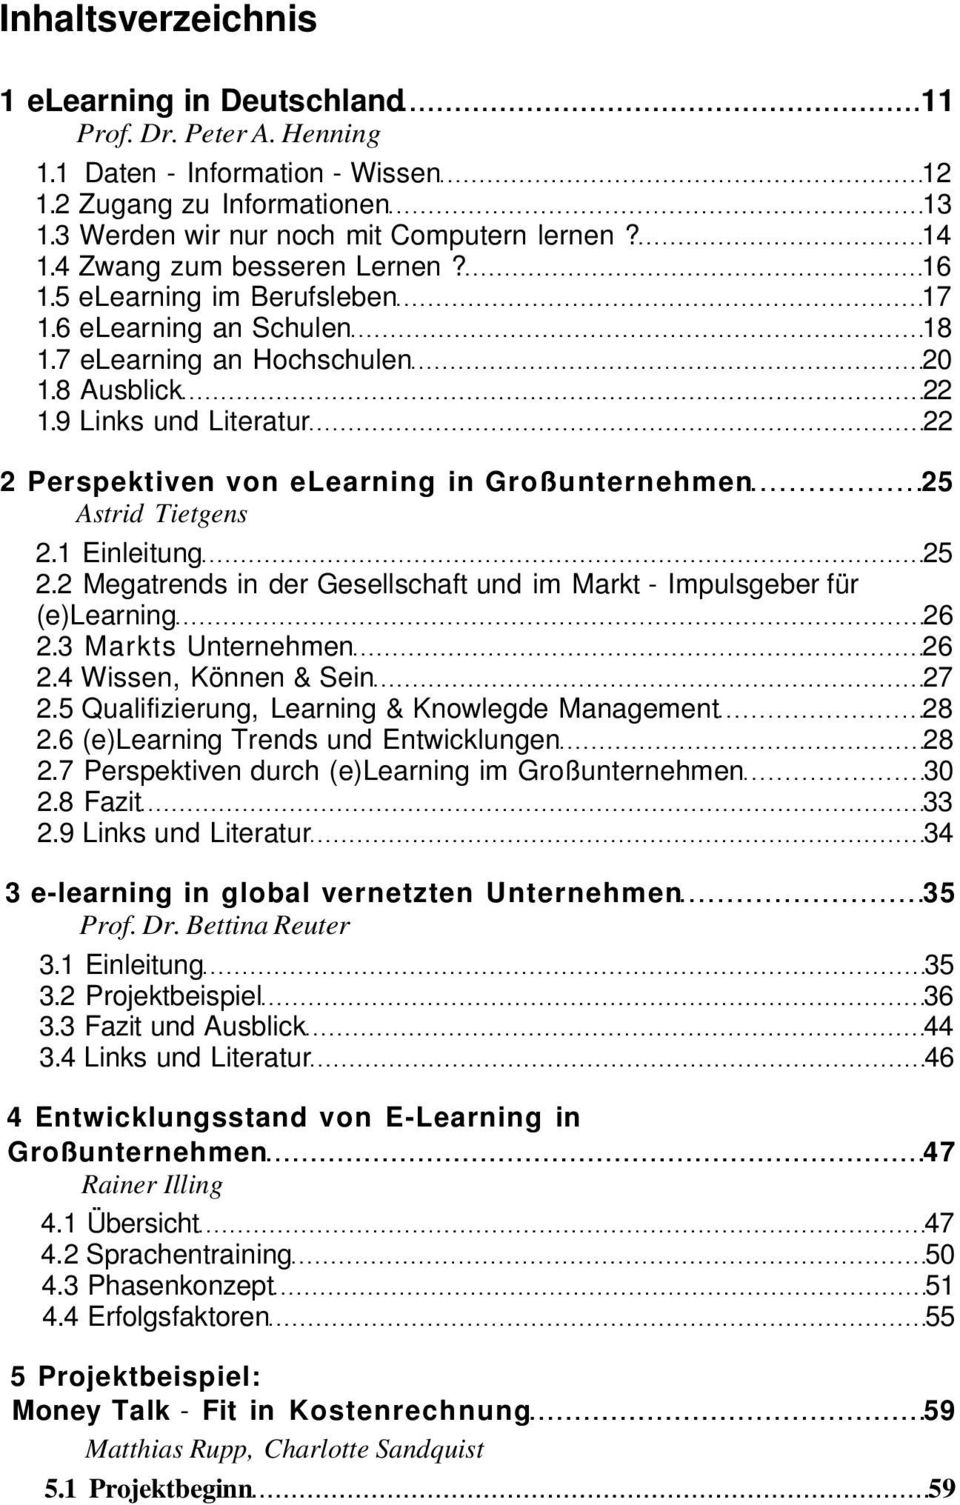 9 Links und Literatur 22 2 Perspektiven von elearning in Großunternehmen 25 Astrid Tietgens 2.1 Einleitung 25 2.2 Megatrends in der Gesellschaft und im Markt - Impulsgeber für (e)learning 26 2.